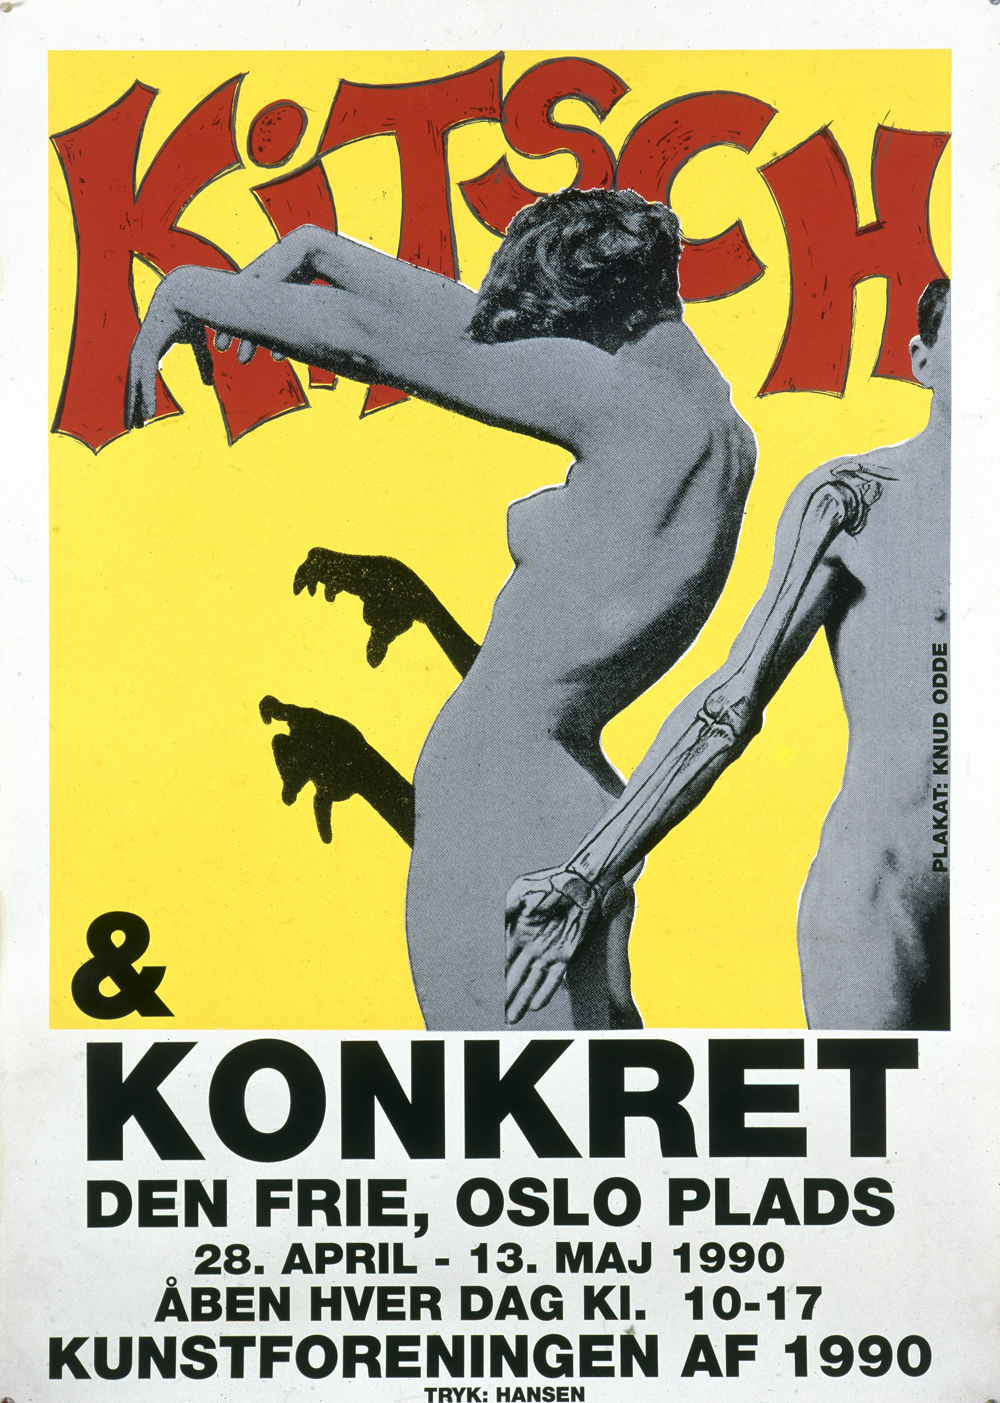 Graphics_Kitsch & Konkret_160x120cm_Silk-screen poster_1990